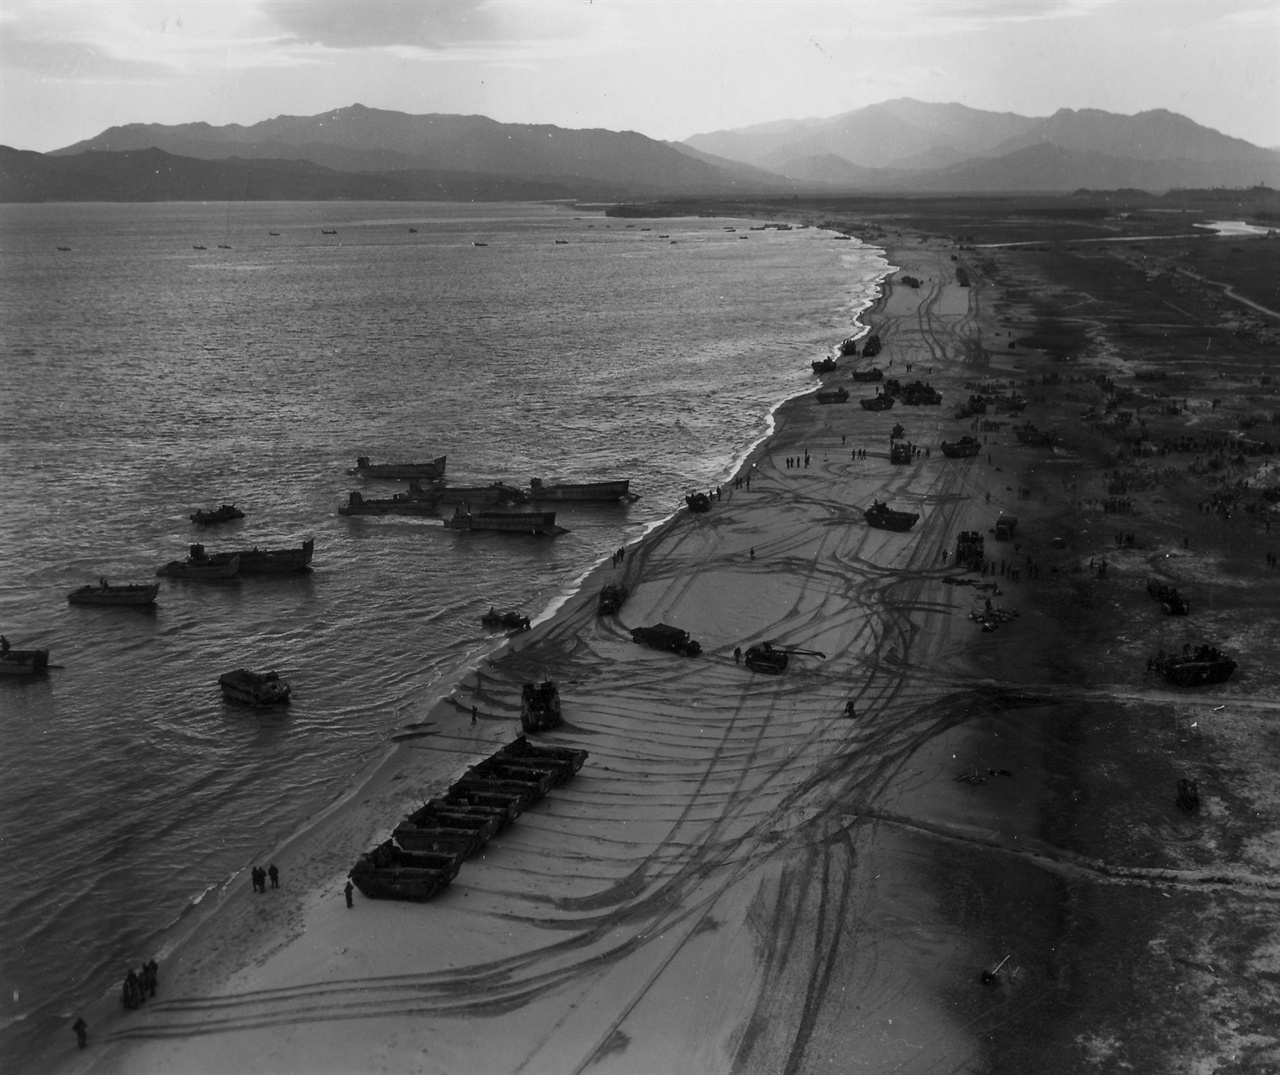 1950. 10. 25. 미 해병대는 인민군의 별 저항 없이 원산 해안으로 상륙했다. 